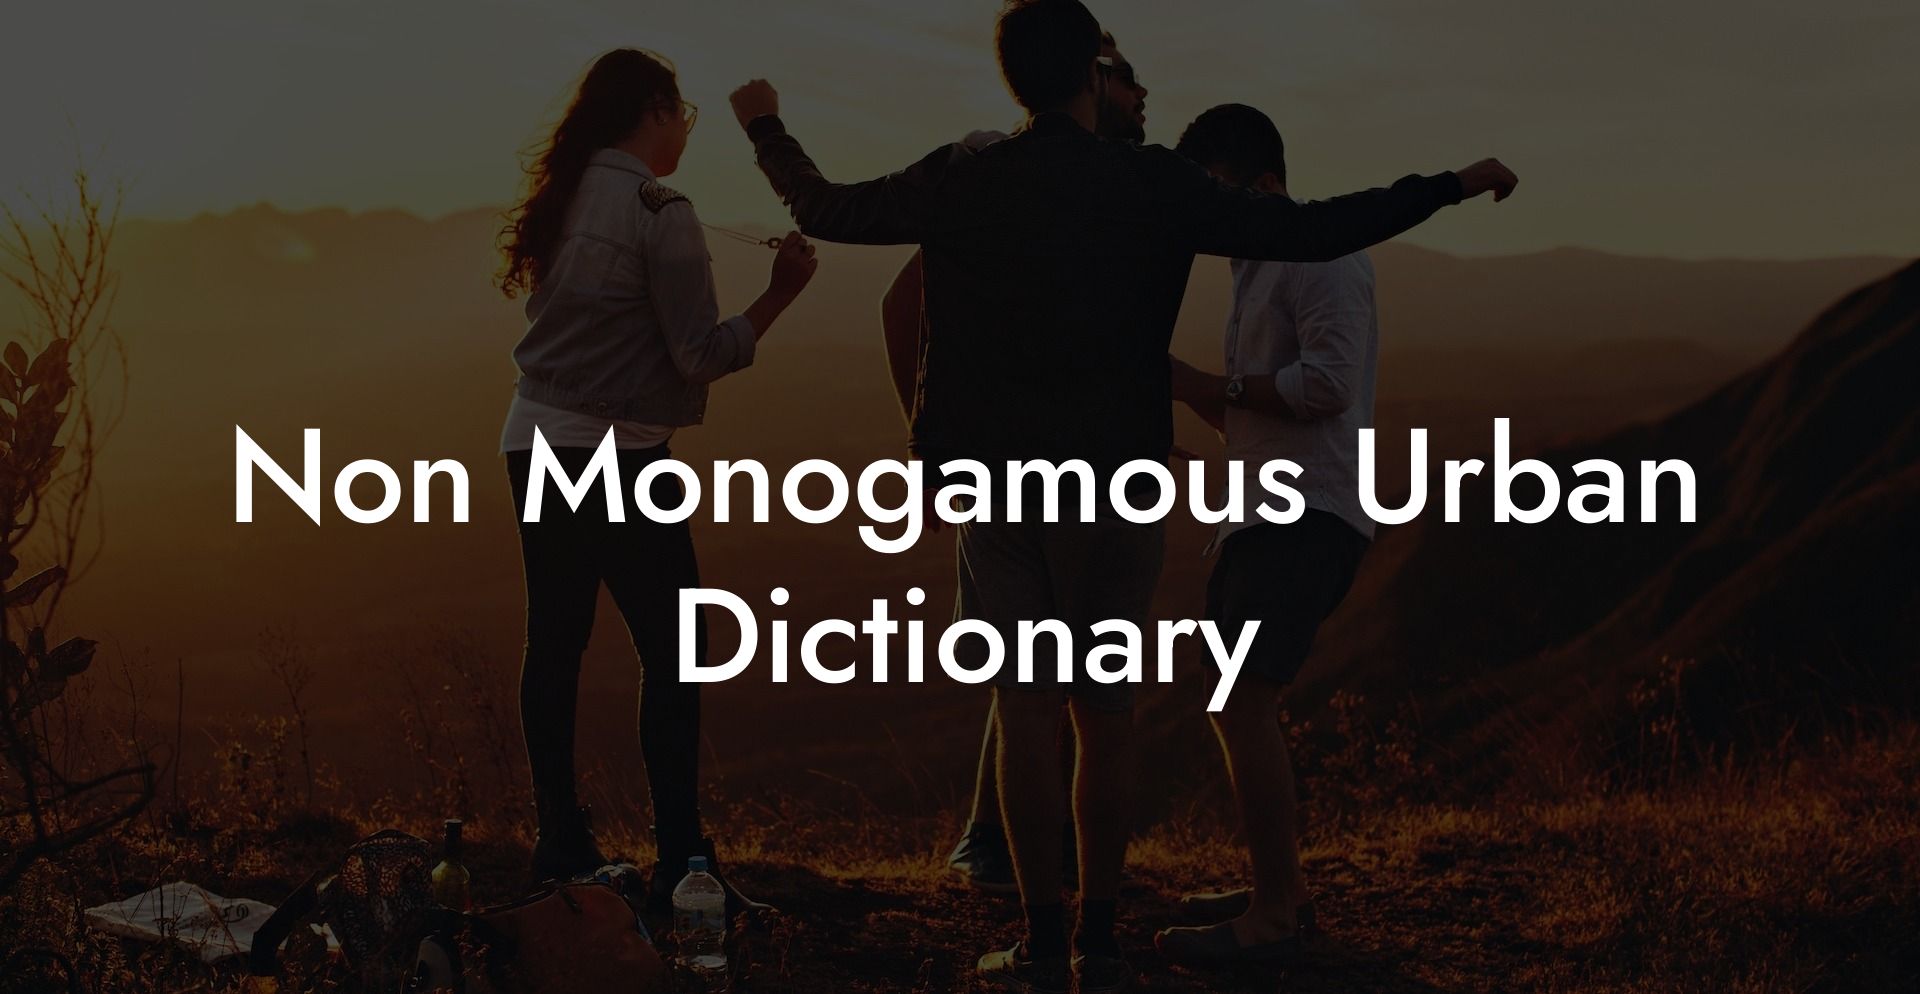 Non Monogamous Urban Dictionary